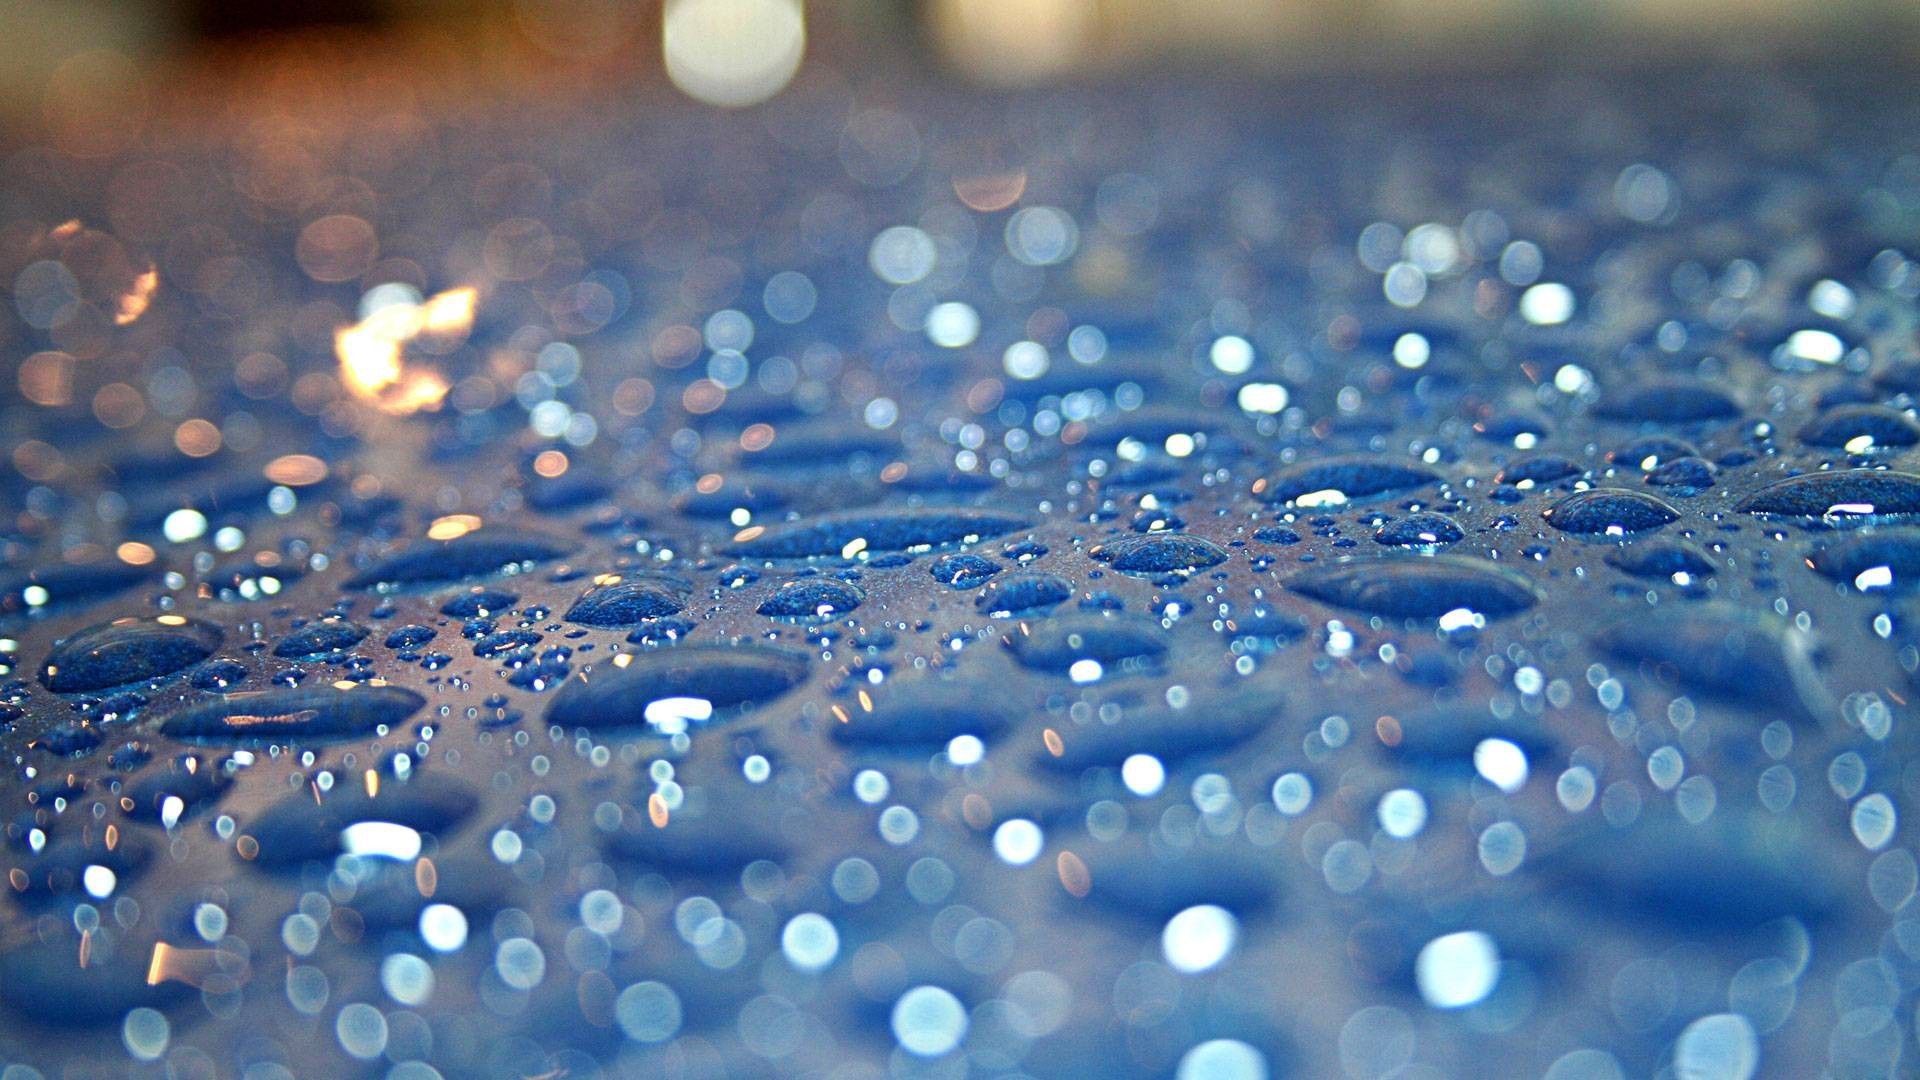 ディプ名の壁紙,青い,水,落とす,水分,雨